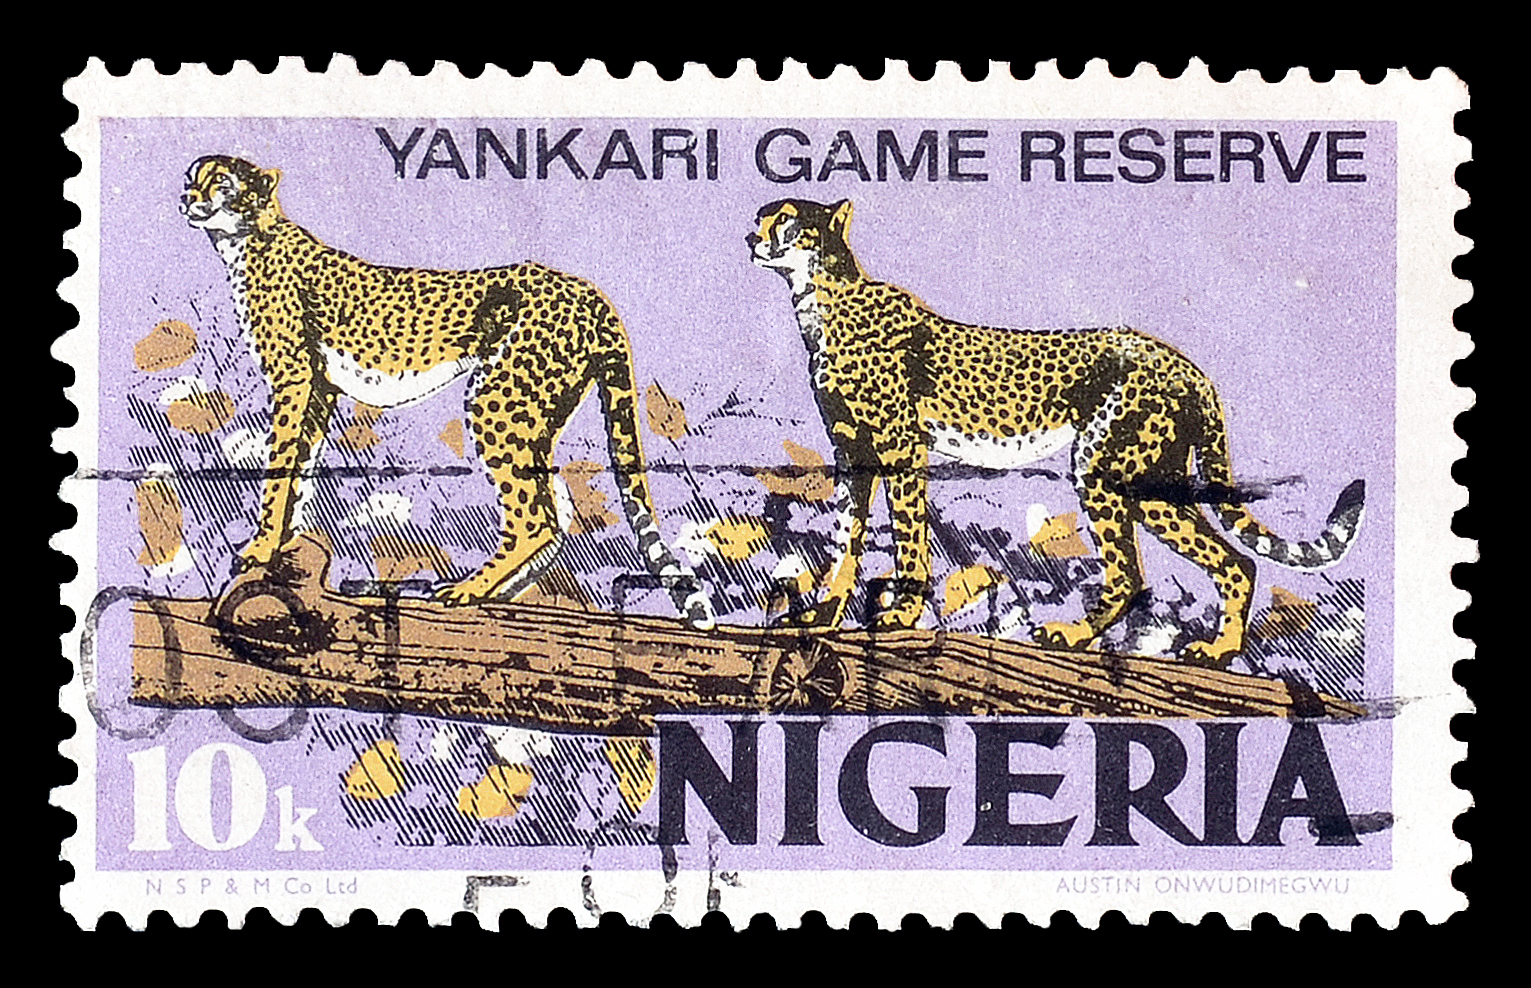 Nigeria 1973